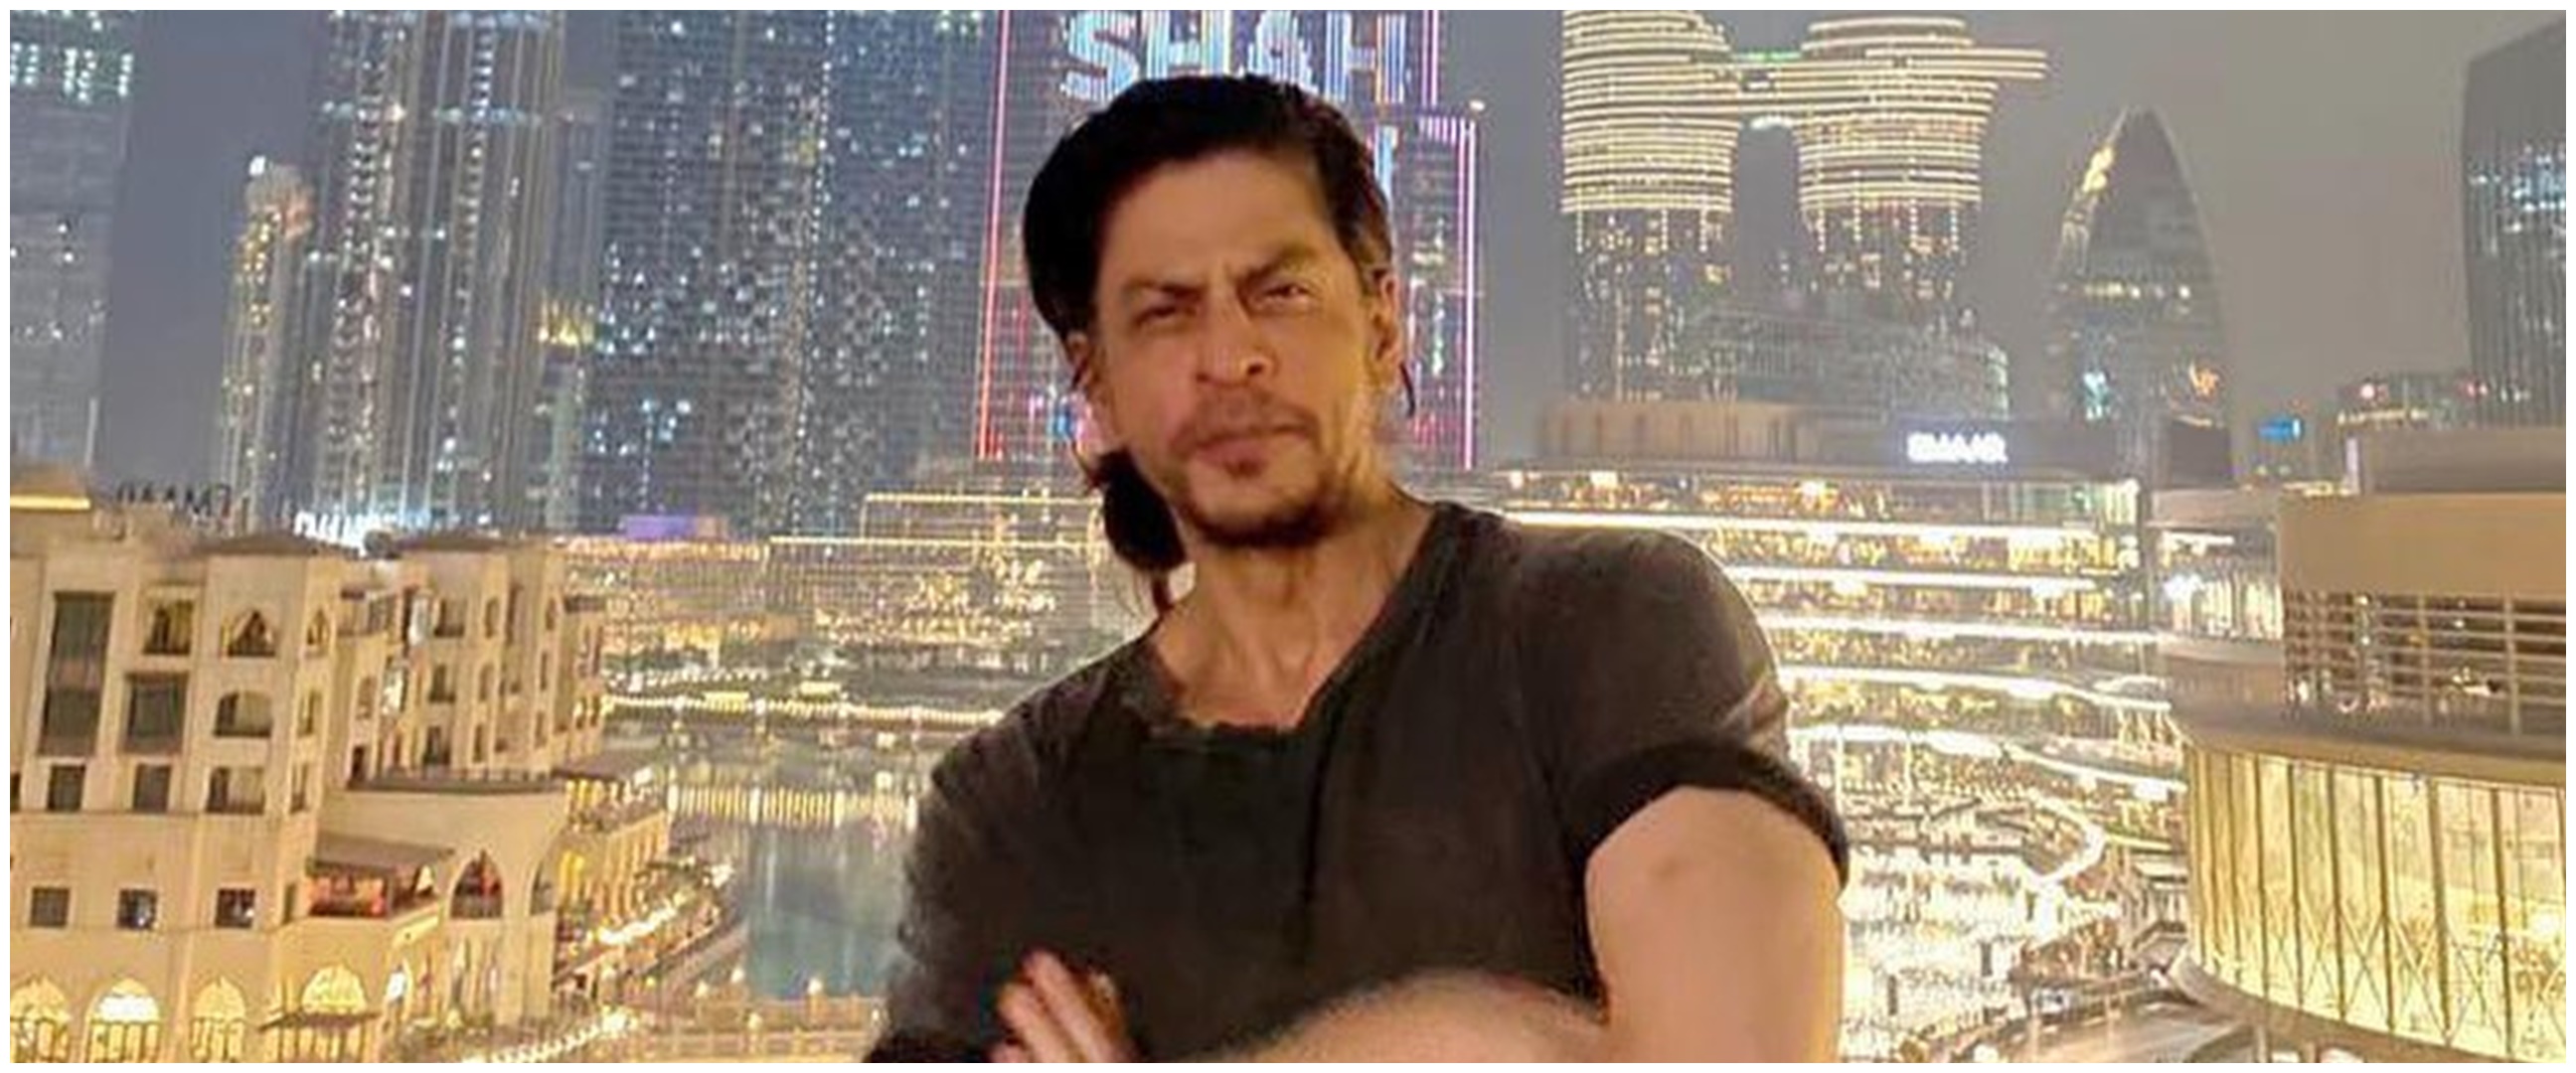 Nggak pakai ribet, intip 7 pola hidup sehat ala Shah Rukh Khan